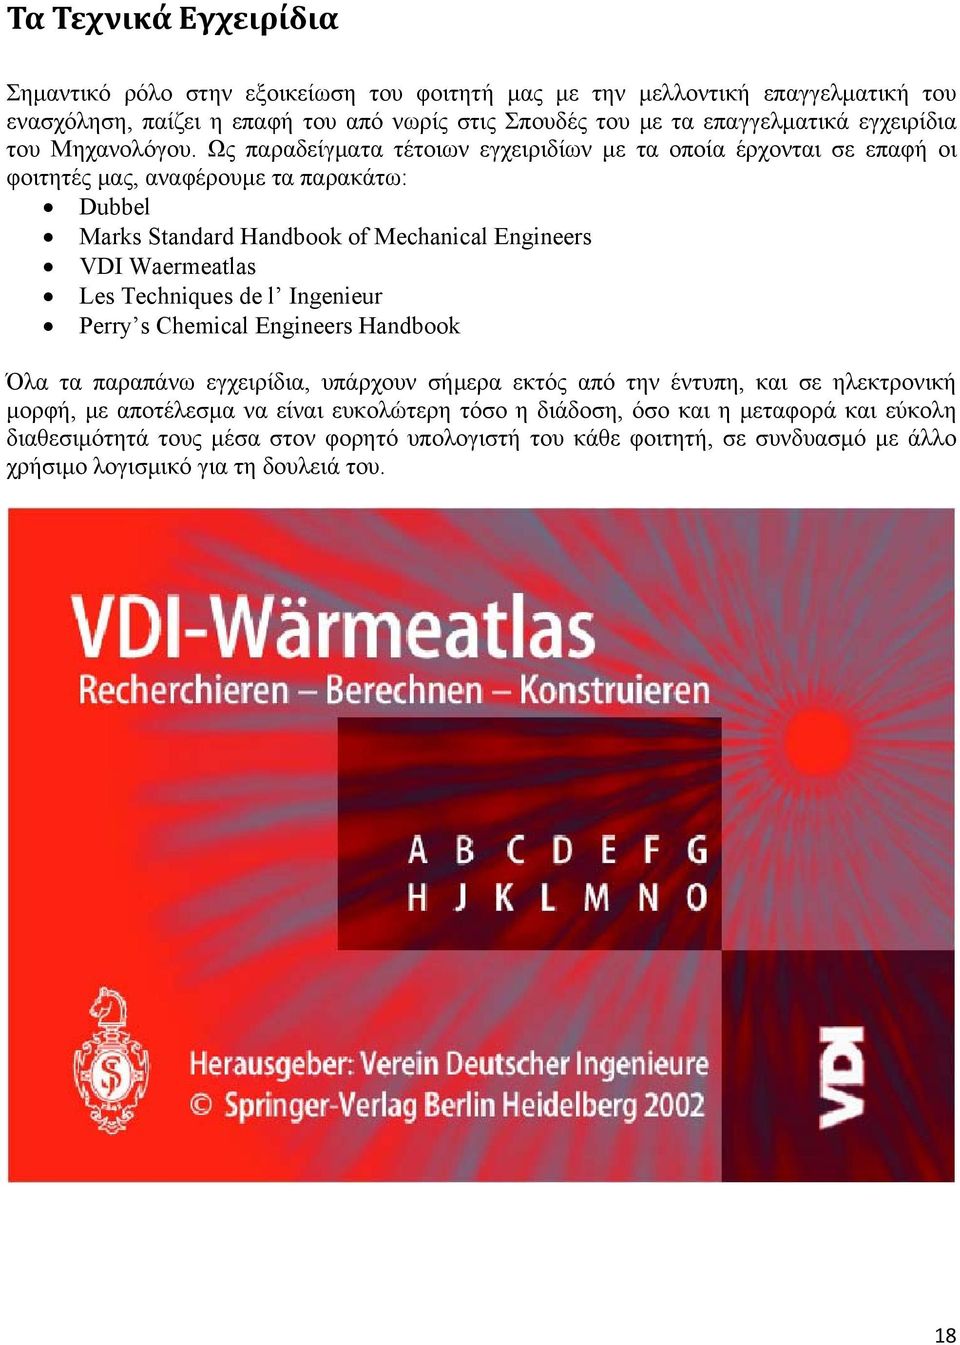 Ως παραδείγματα τέτοιων εγχειριδίων με τα οποία έρχονται σε επαφή οι φοιτητές μας, αναφέρουμε τα παρακάτω: Dubbel Marks Standard Handbook of Mechanical Engineers VDI Waermeatlas Les